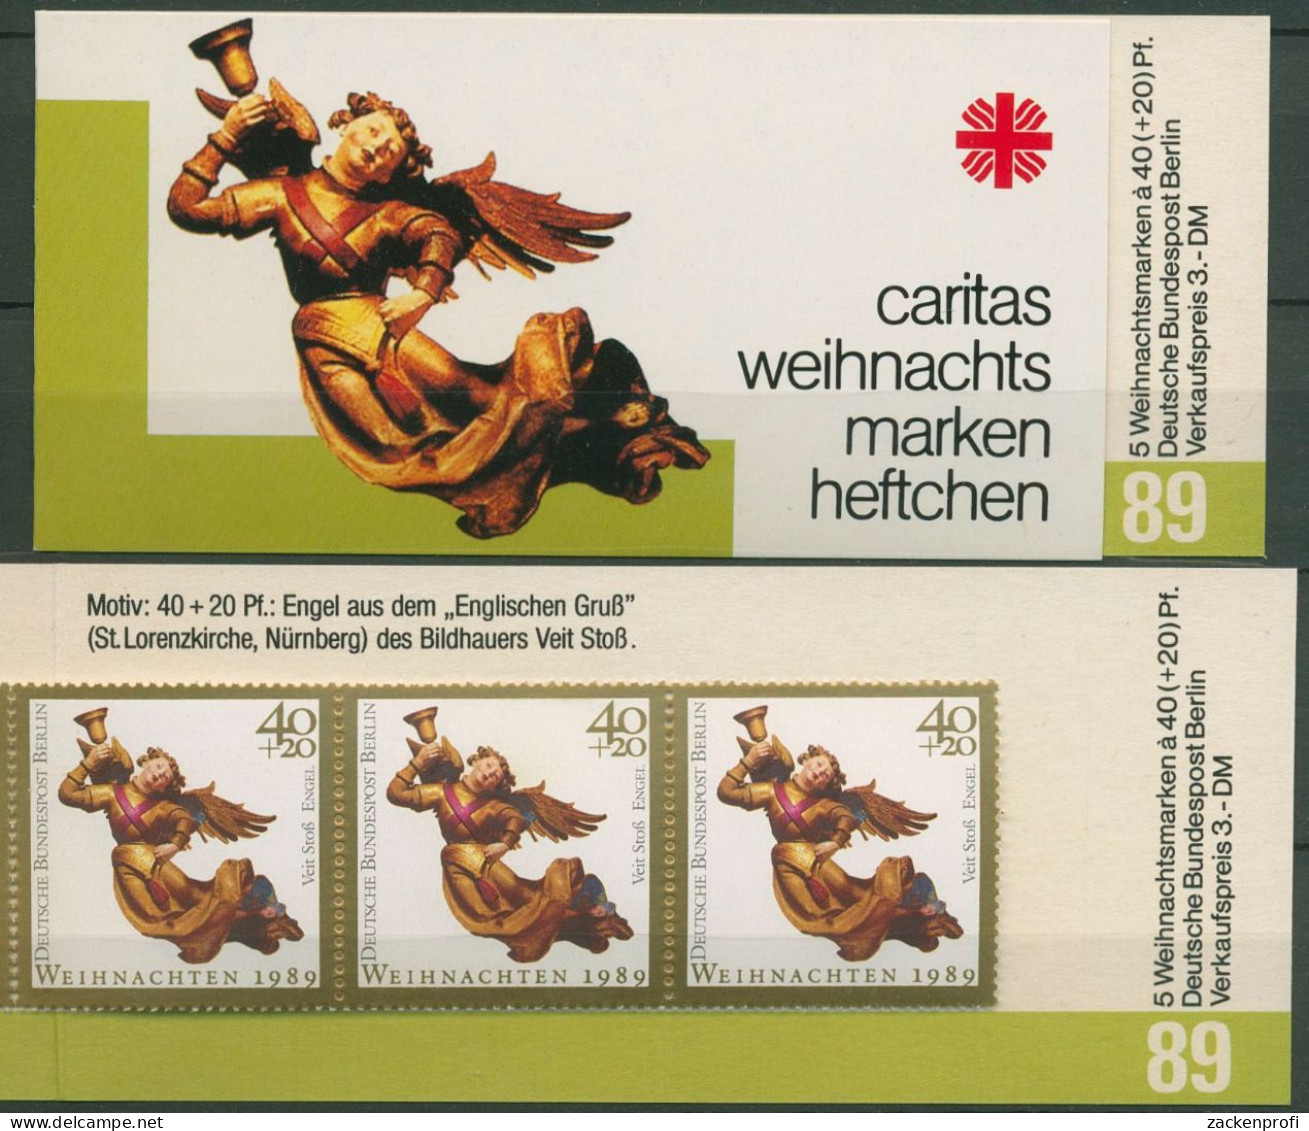 Berlin Caritas 1989 Weihnachten Markenheftchen (858) MH W 7 Postfrisch (C60249) - Carnets